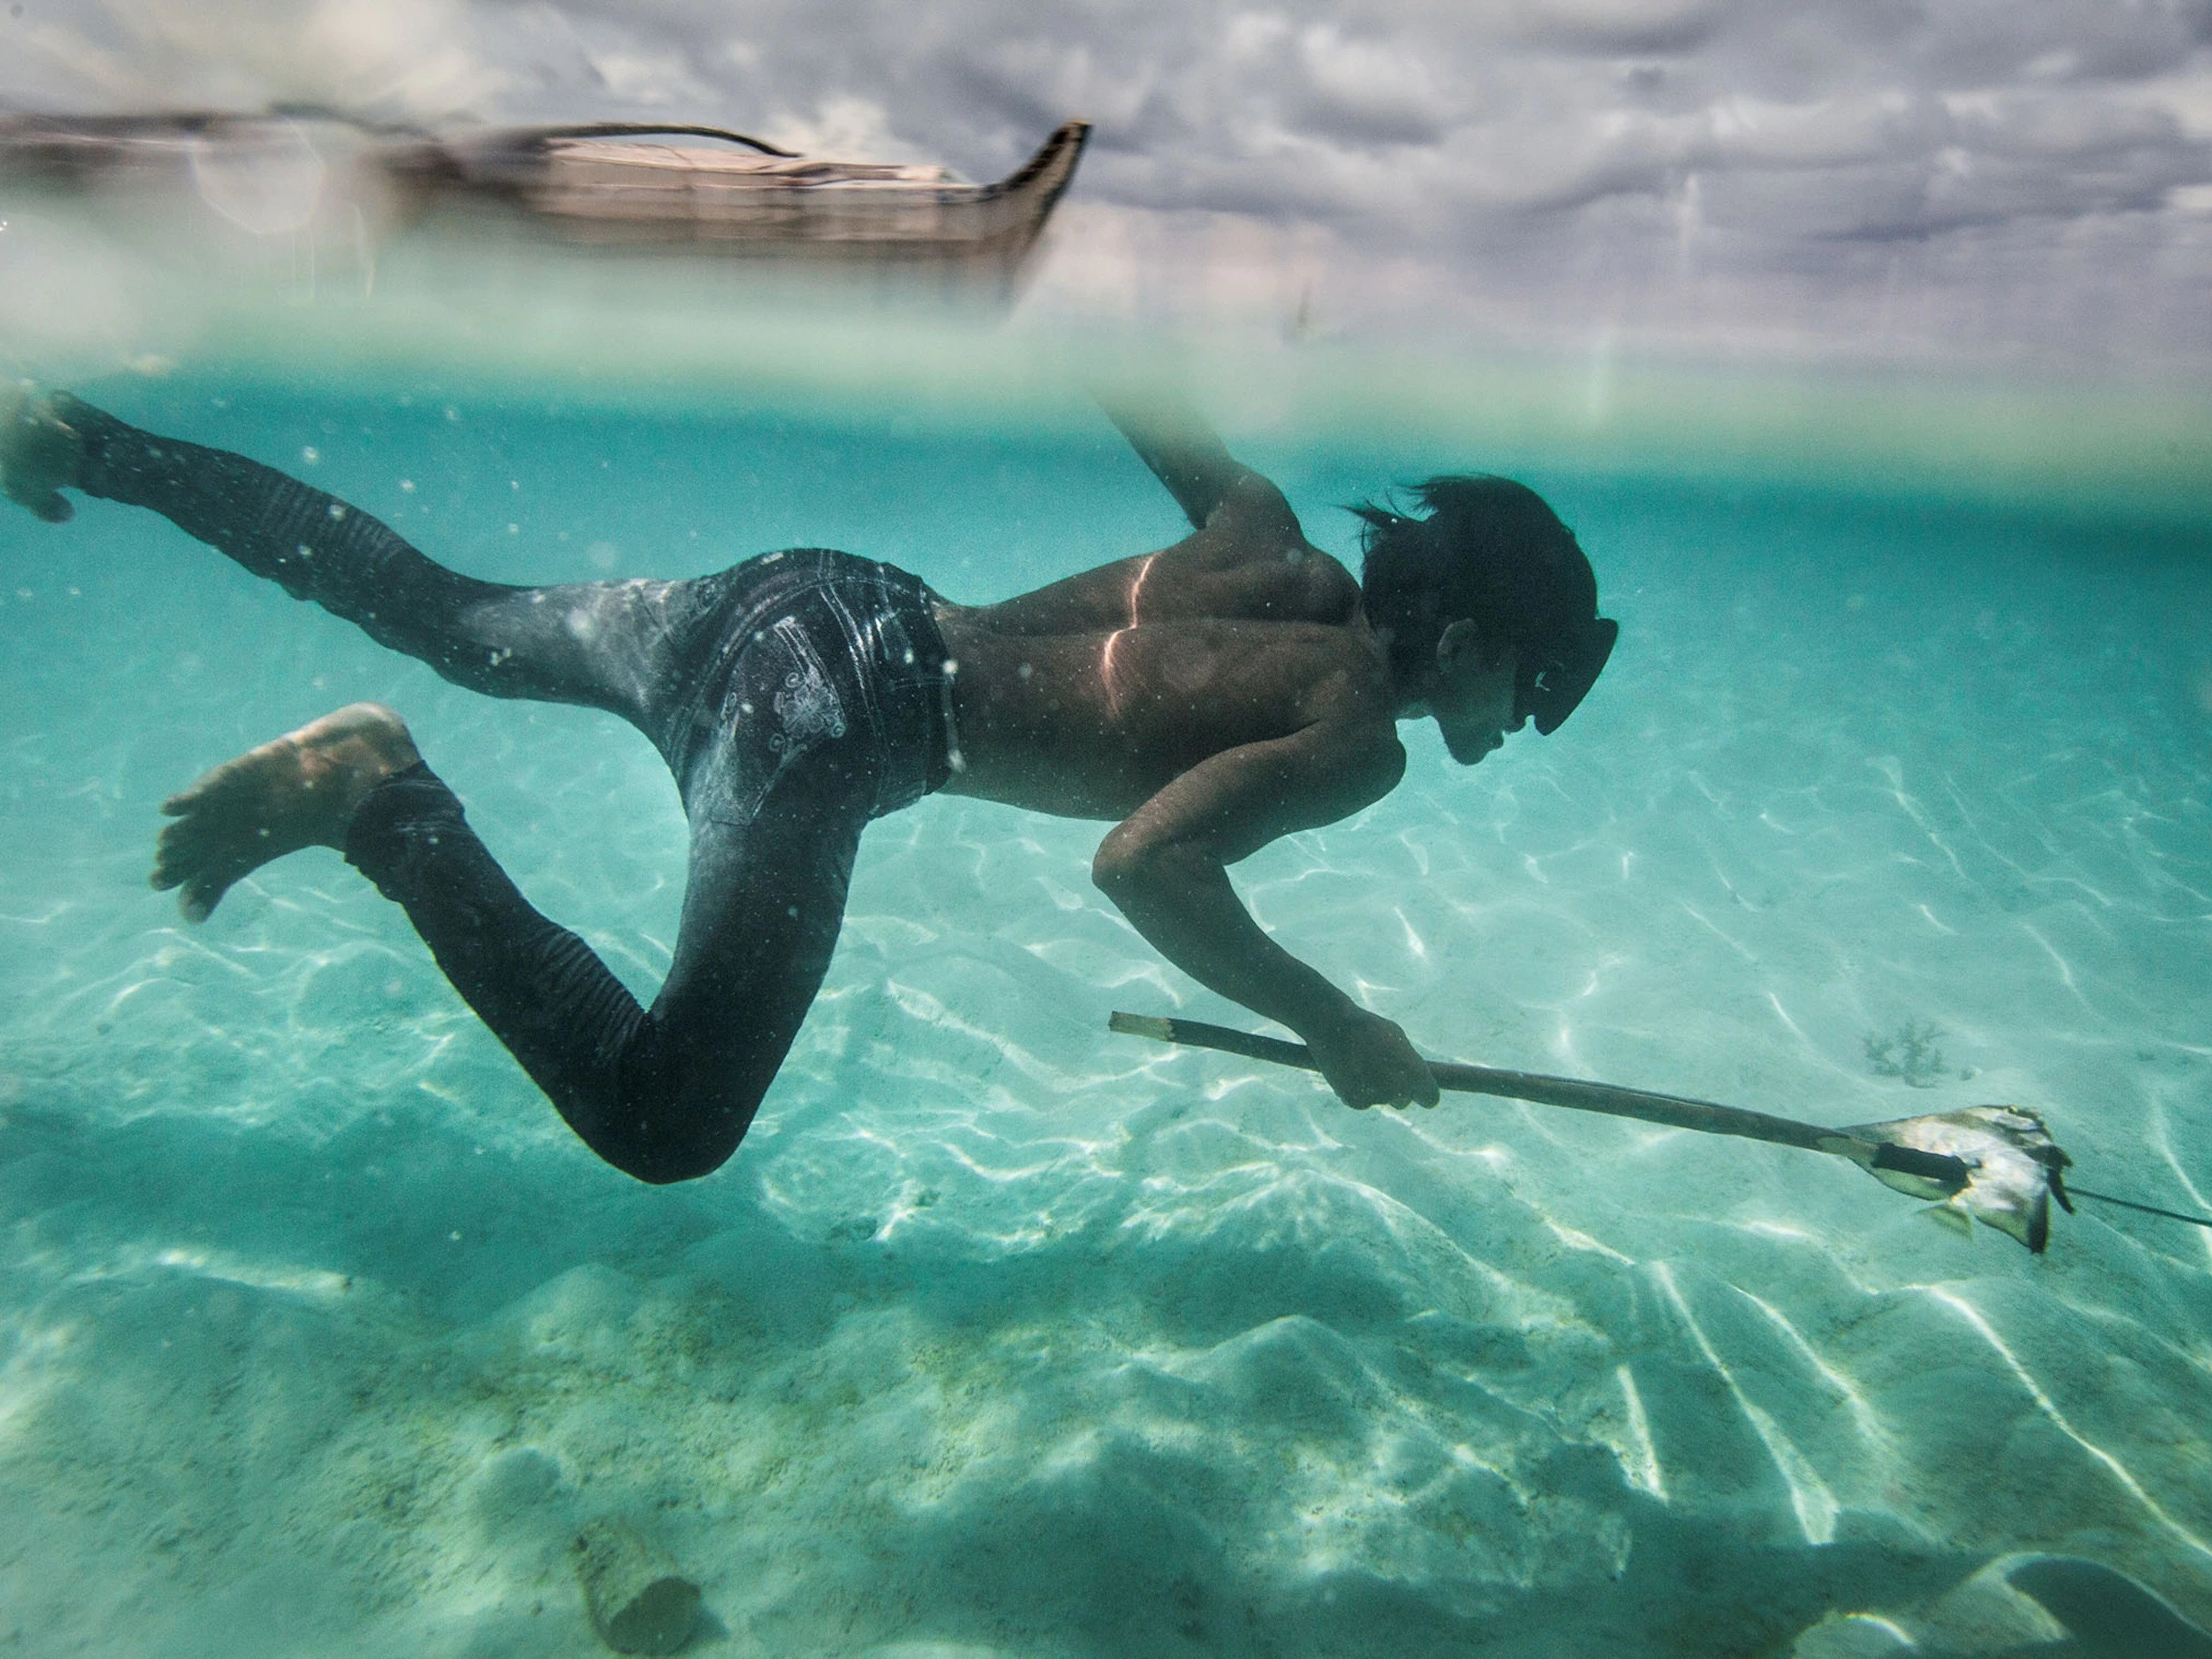 Bajau fisherman diving in the sea